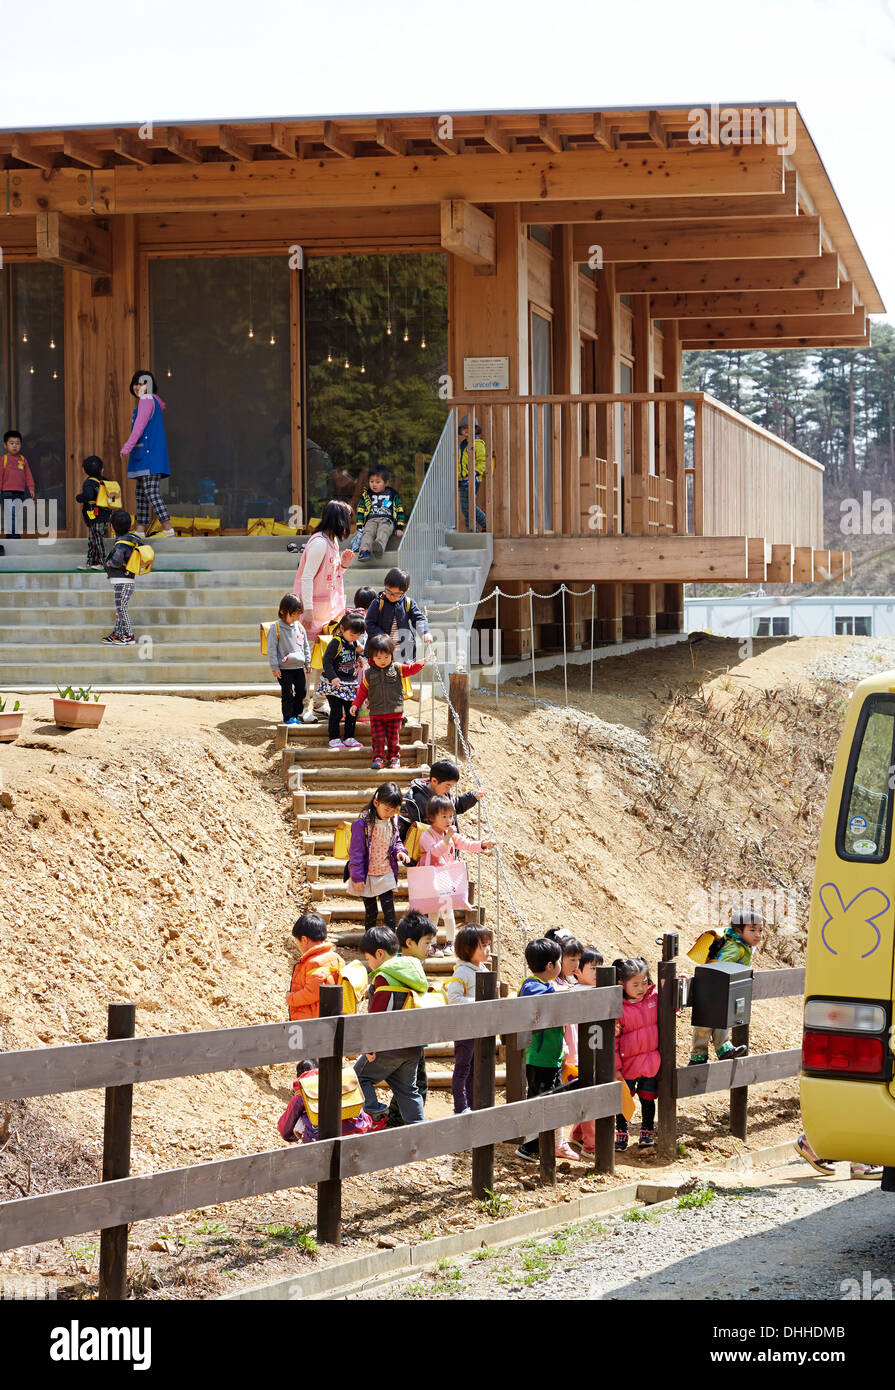 Asahi Kindergarten, Minamisanriku, Giappone. Architetto: Tezuka Architects, 2013. Candide vista esterna alla fine della giornata scolastica. Foto Stock